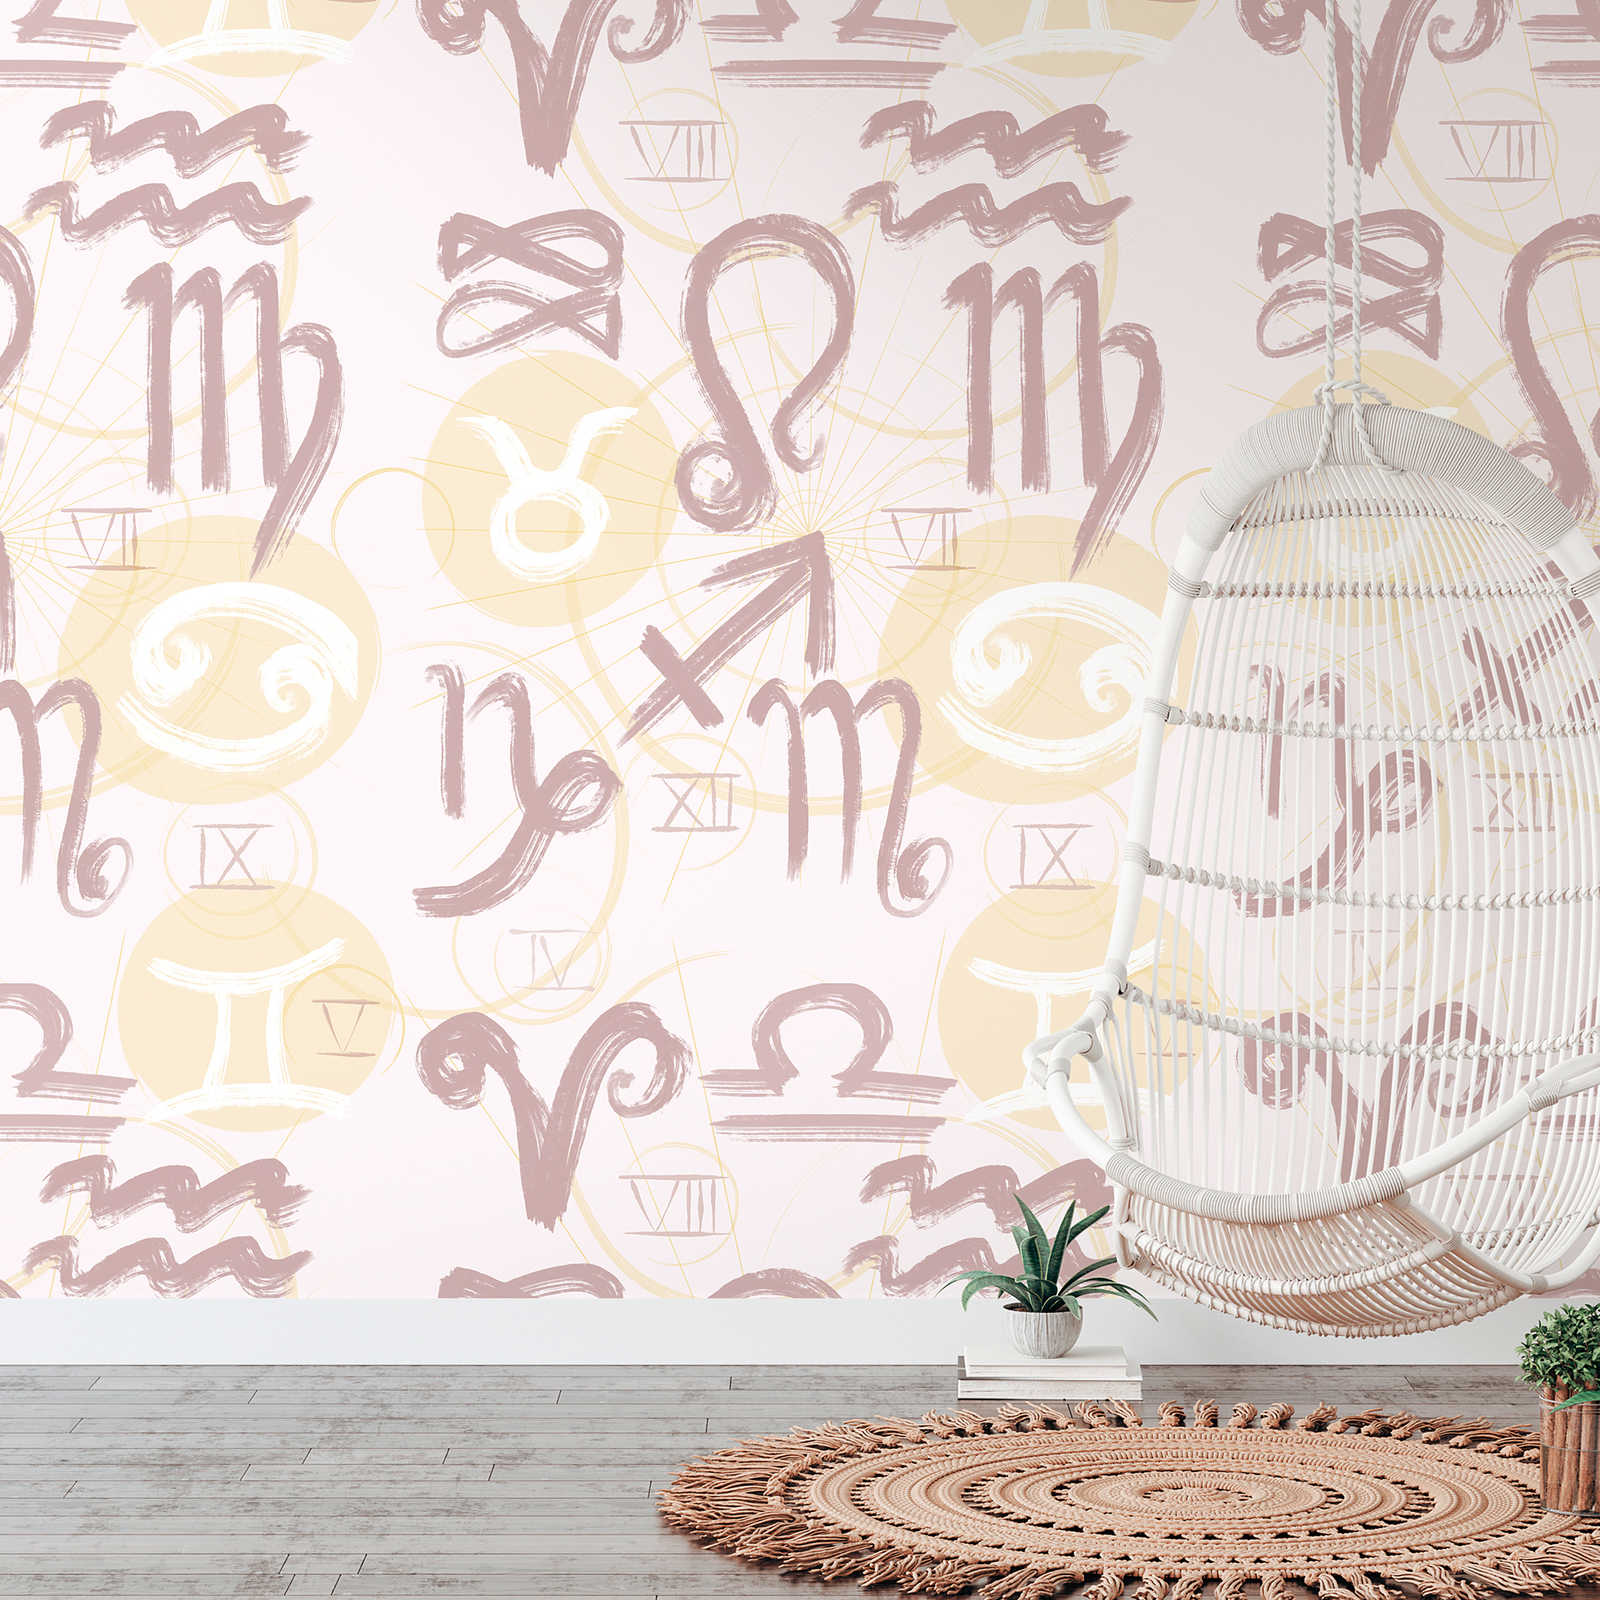 Onderlaag behang met dierenriemsymbolen en Romeinse cijfers - crème, geel, roze
